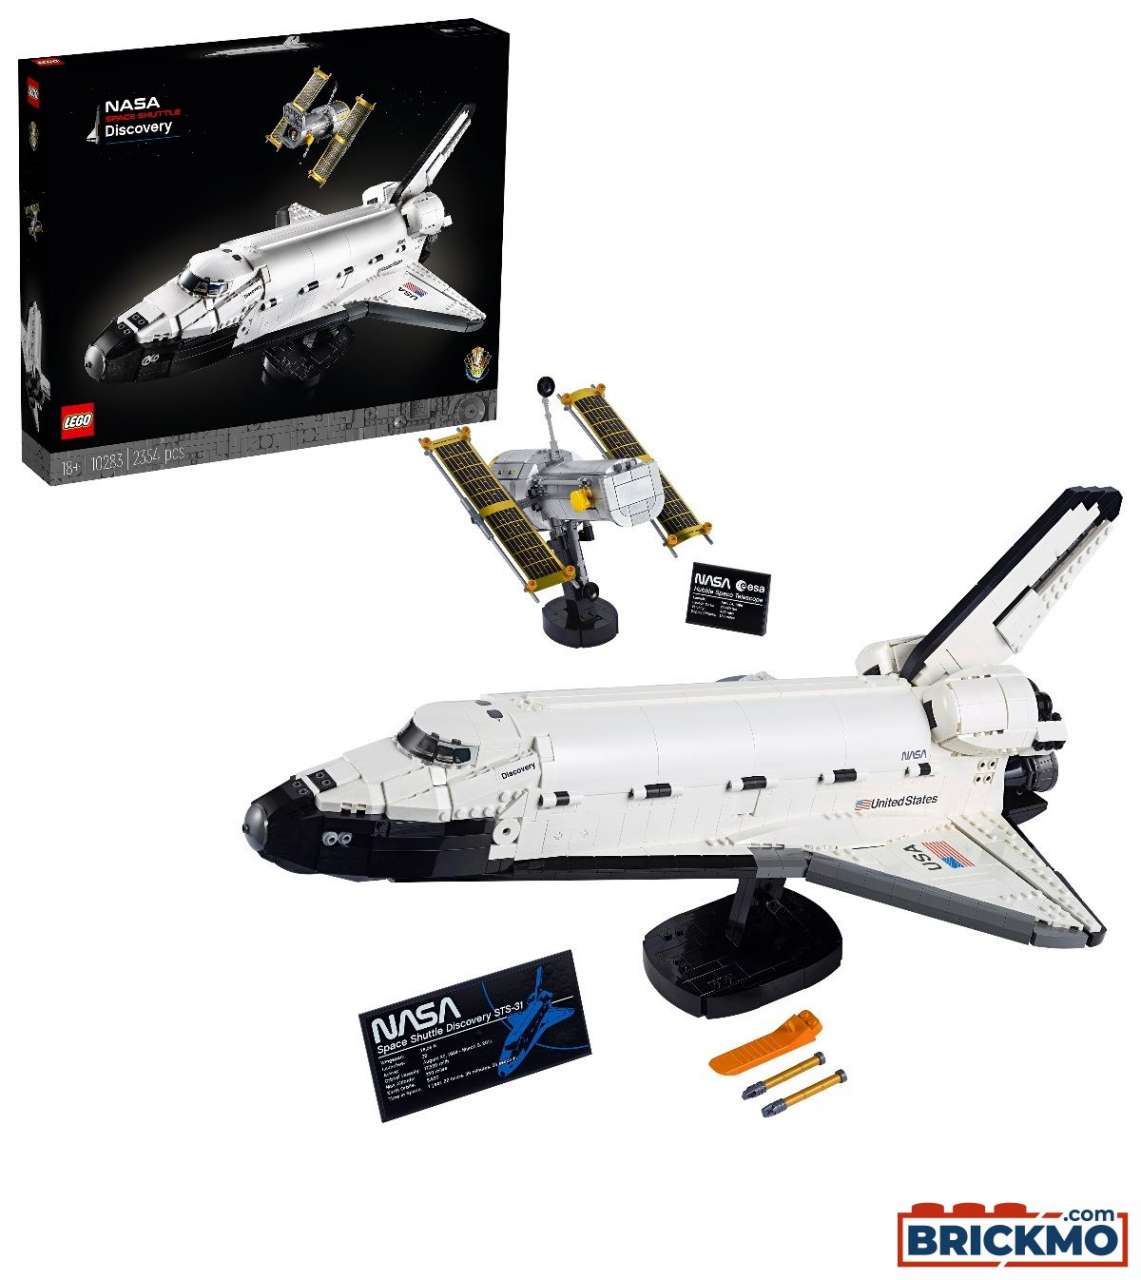 LEGO 10283 Vaivém Espacial Discovery da NASA 10283